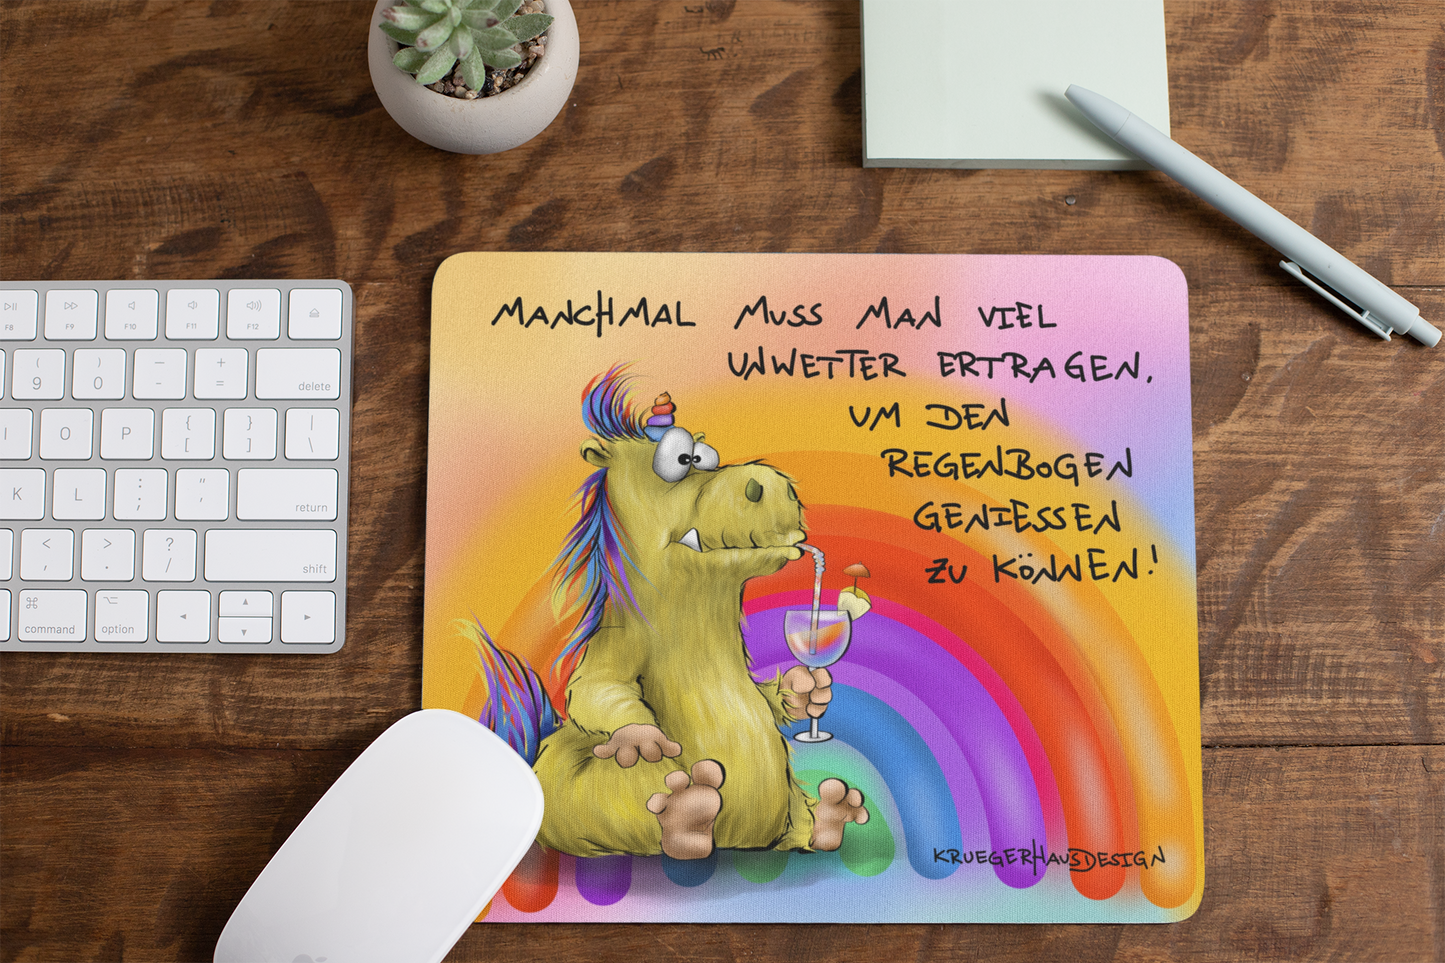 Mousepad, Mauspad 22 x 18cm Kruegerhausdesign Einhorn Monster "Manchmal muss man viel..."